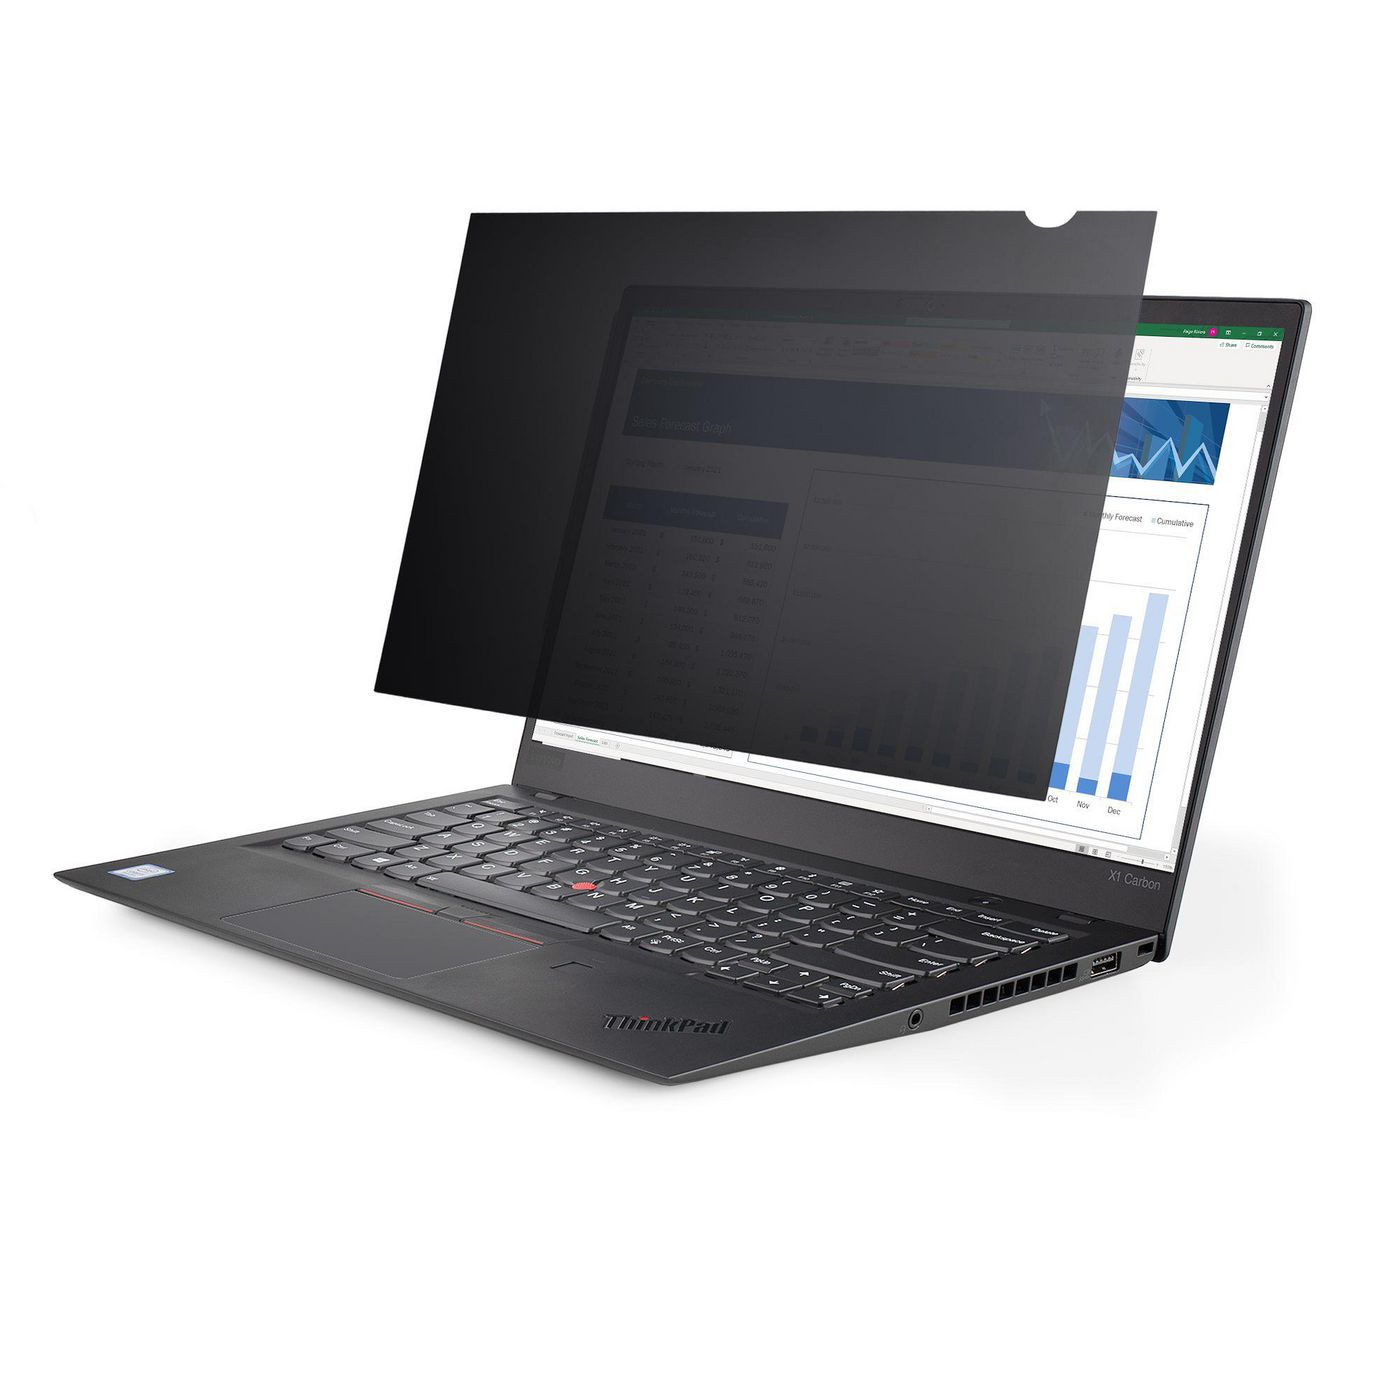 STARTECH.COM 35,56cm 14Zoll Laptop Sichtschutzfolie - Blickschutzfilter/Spionfolie fur Widescreen 16